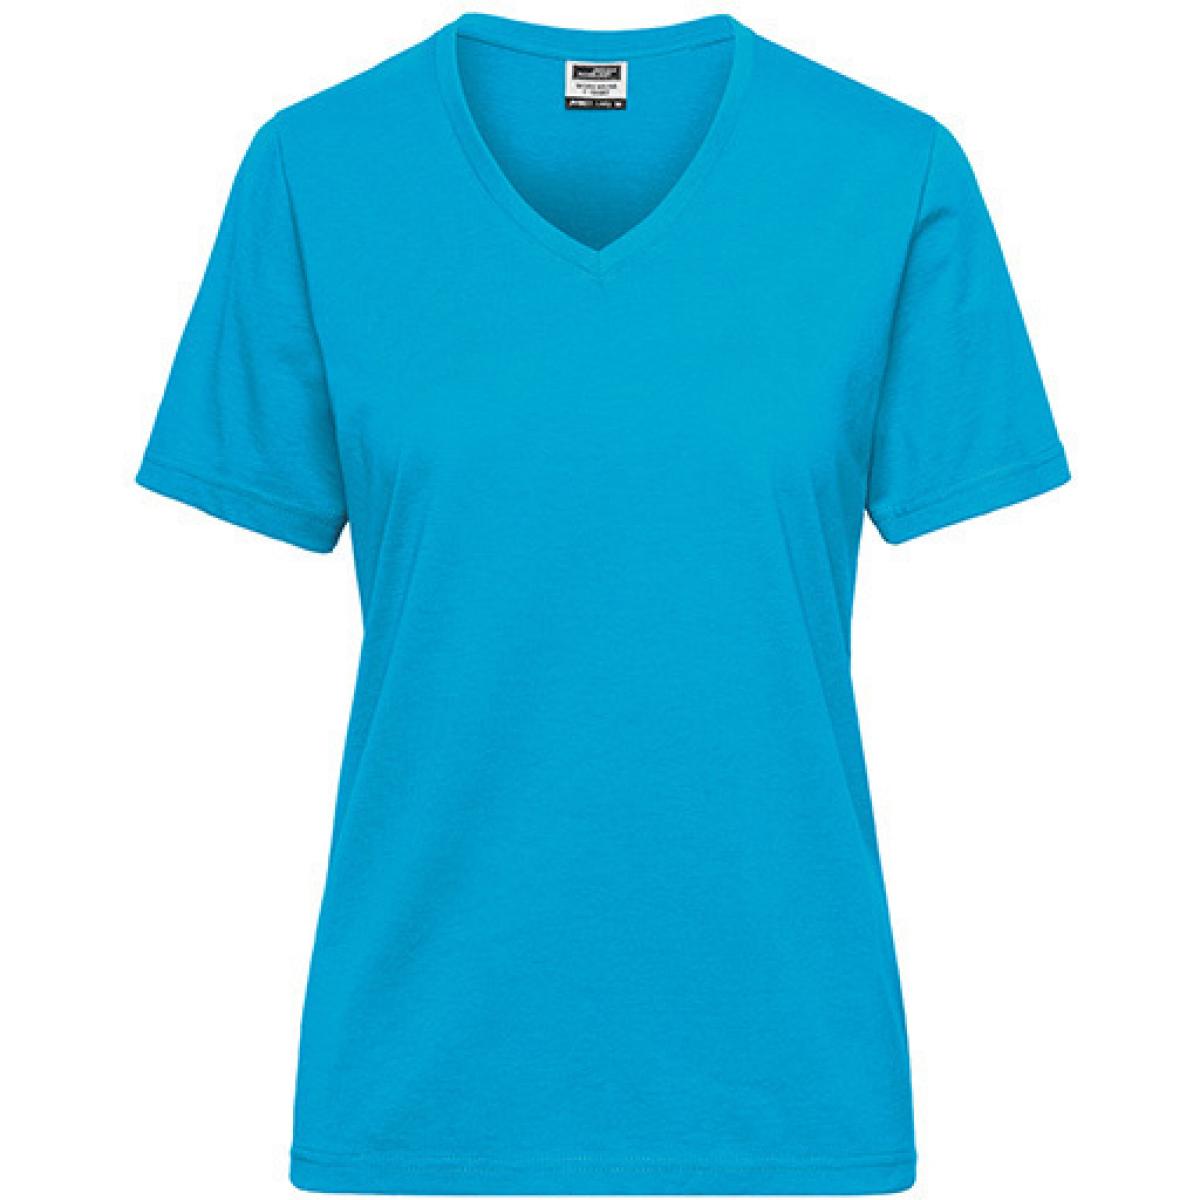 Hersteller: James+Nicholson Herstellernummer: JN1807 Artikelbezeichnung: Ladies‘ BIO Workwear T-Shirt / Damen T-Shirt - Waschbar 60C Farbe: Turquoise